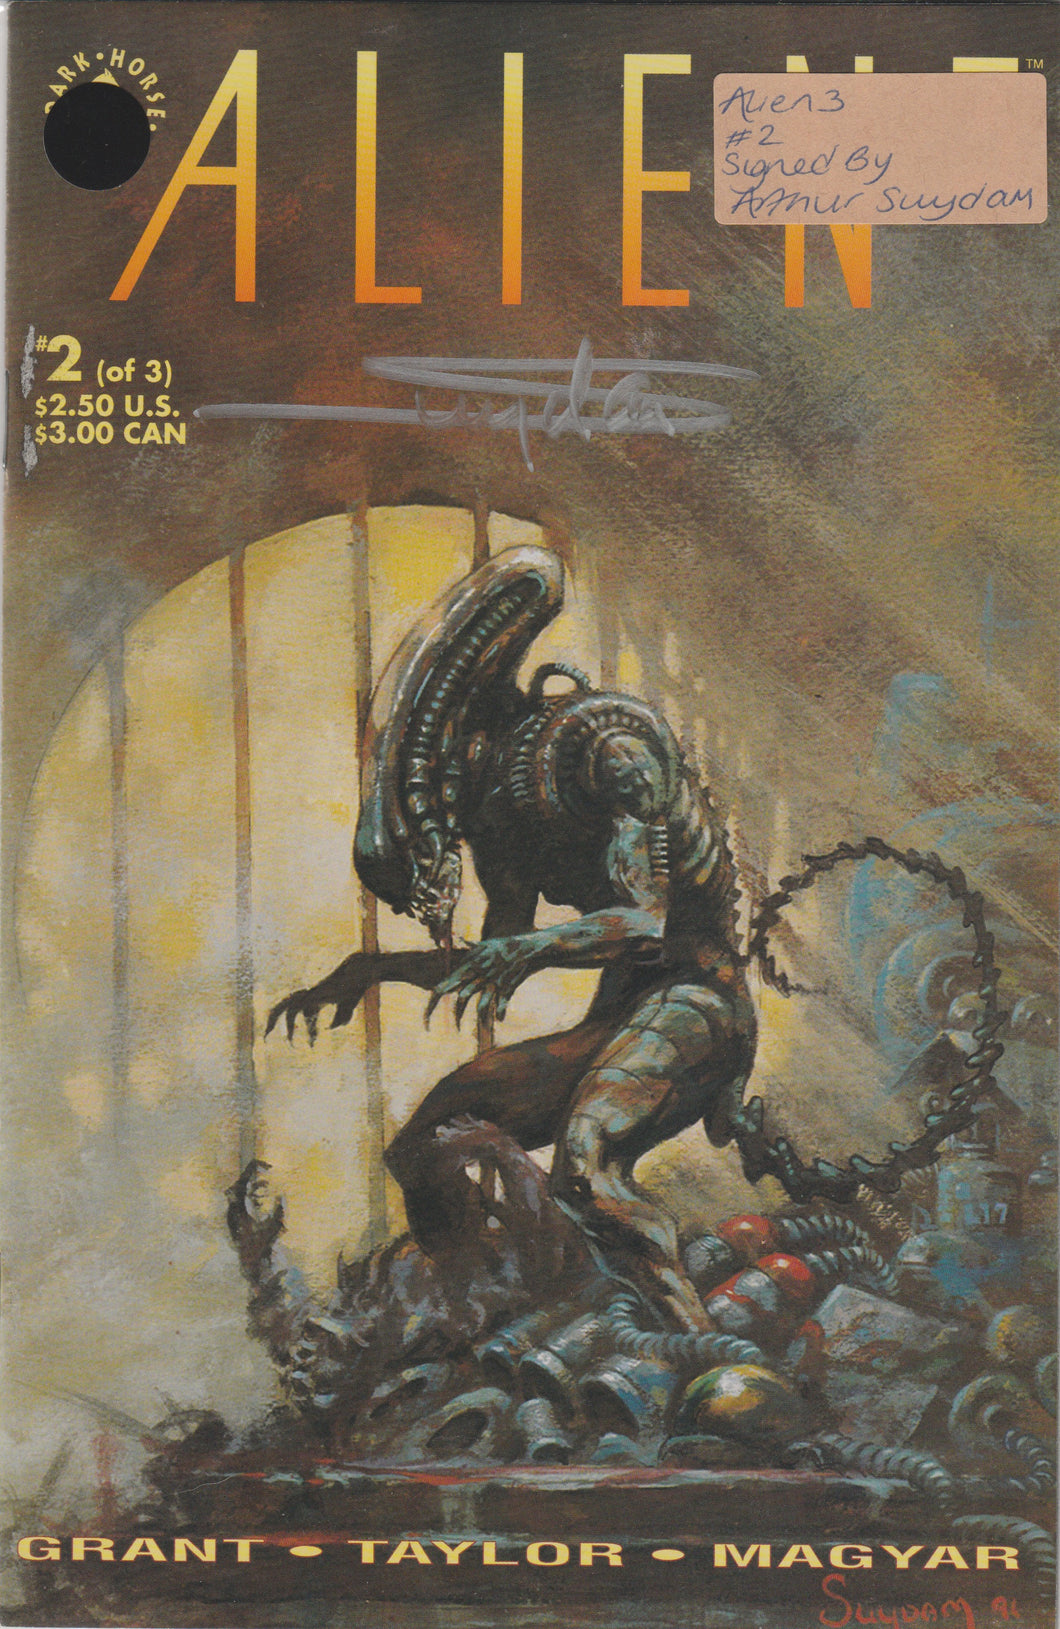 Alien 3 #2 signed by Arthur Suydam